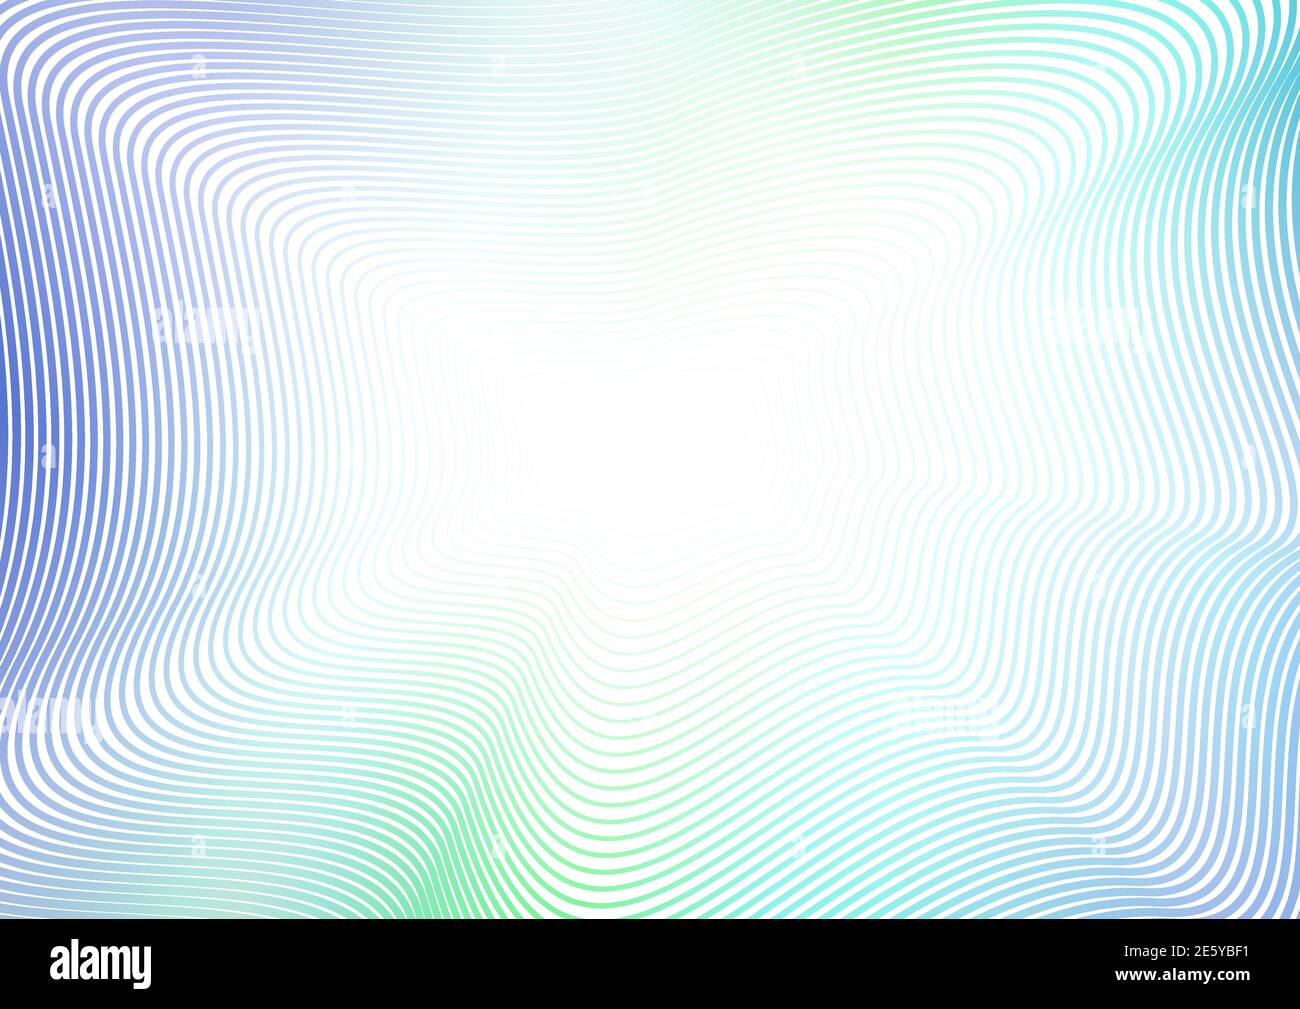 Abstrakter Hintergrund mit Flash-Effekt. Türkis, blau, grüne Quichellinien, fraktales Muster. Gewellte, dünne Kurven. Vektor farbigen Rahmen Design. EPS10 Stock Vektor